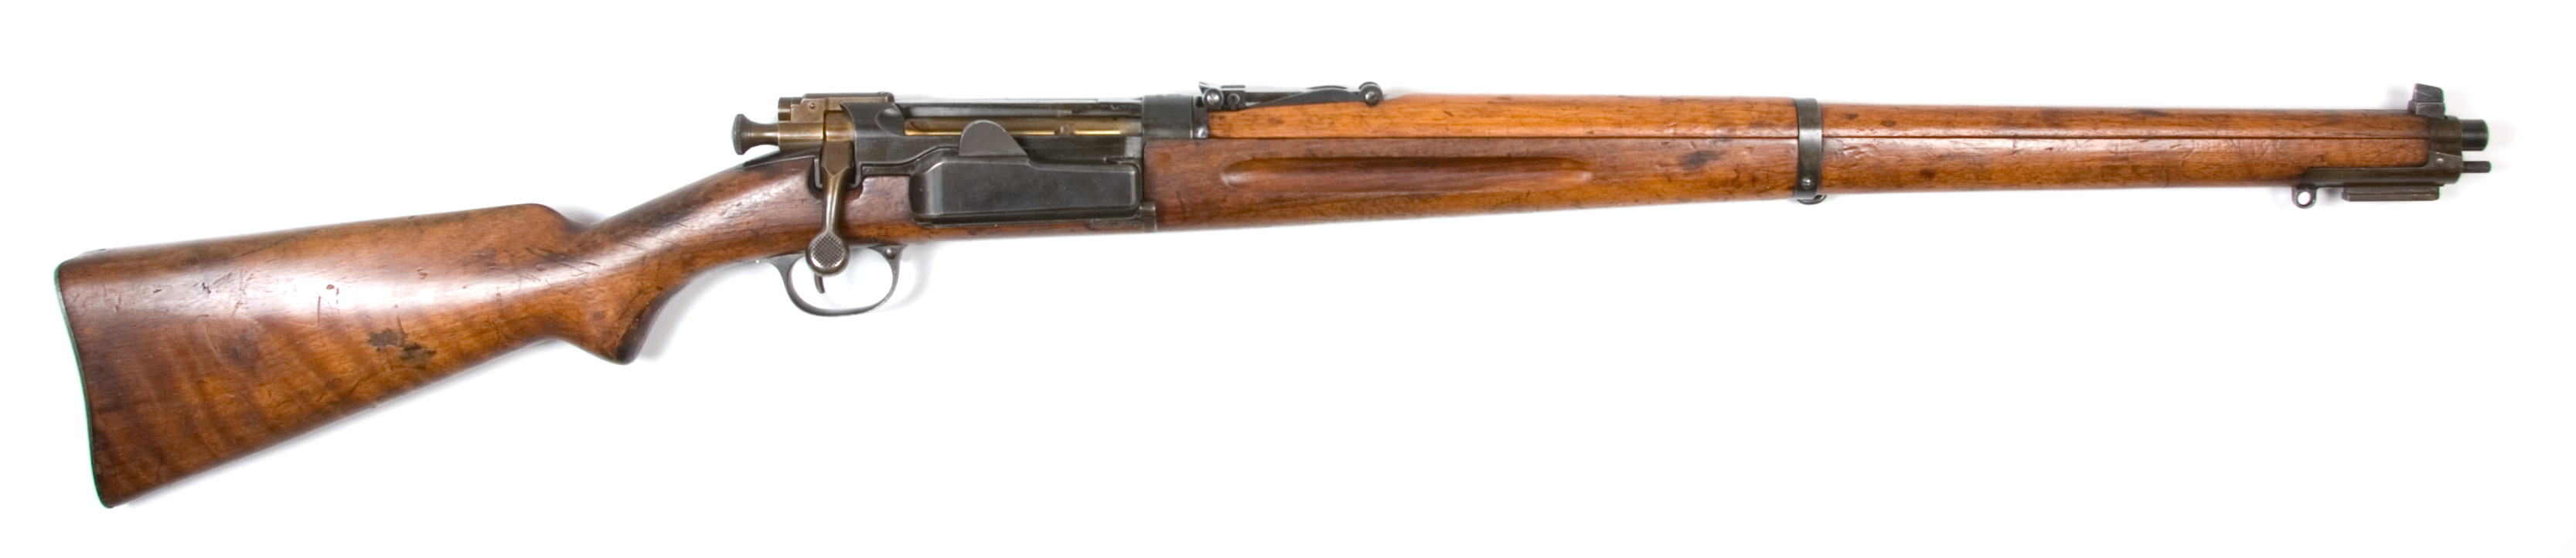 ./guns/rifle/bilder/Rifle-Kongsberg-Krag-M1912-prove-11-1.jpg